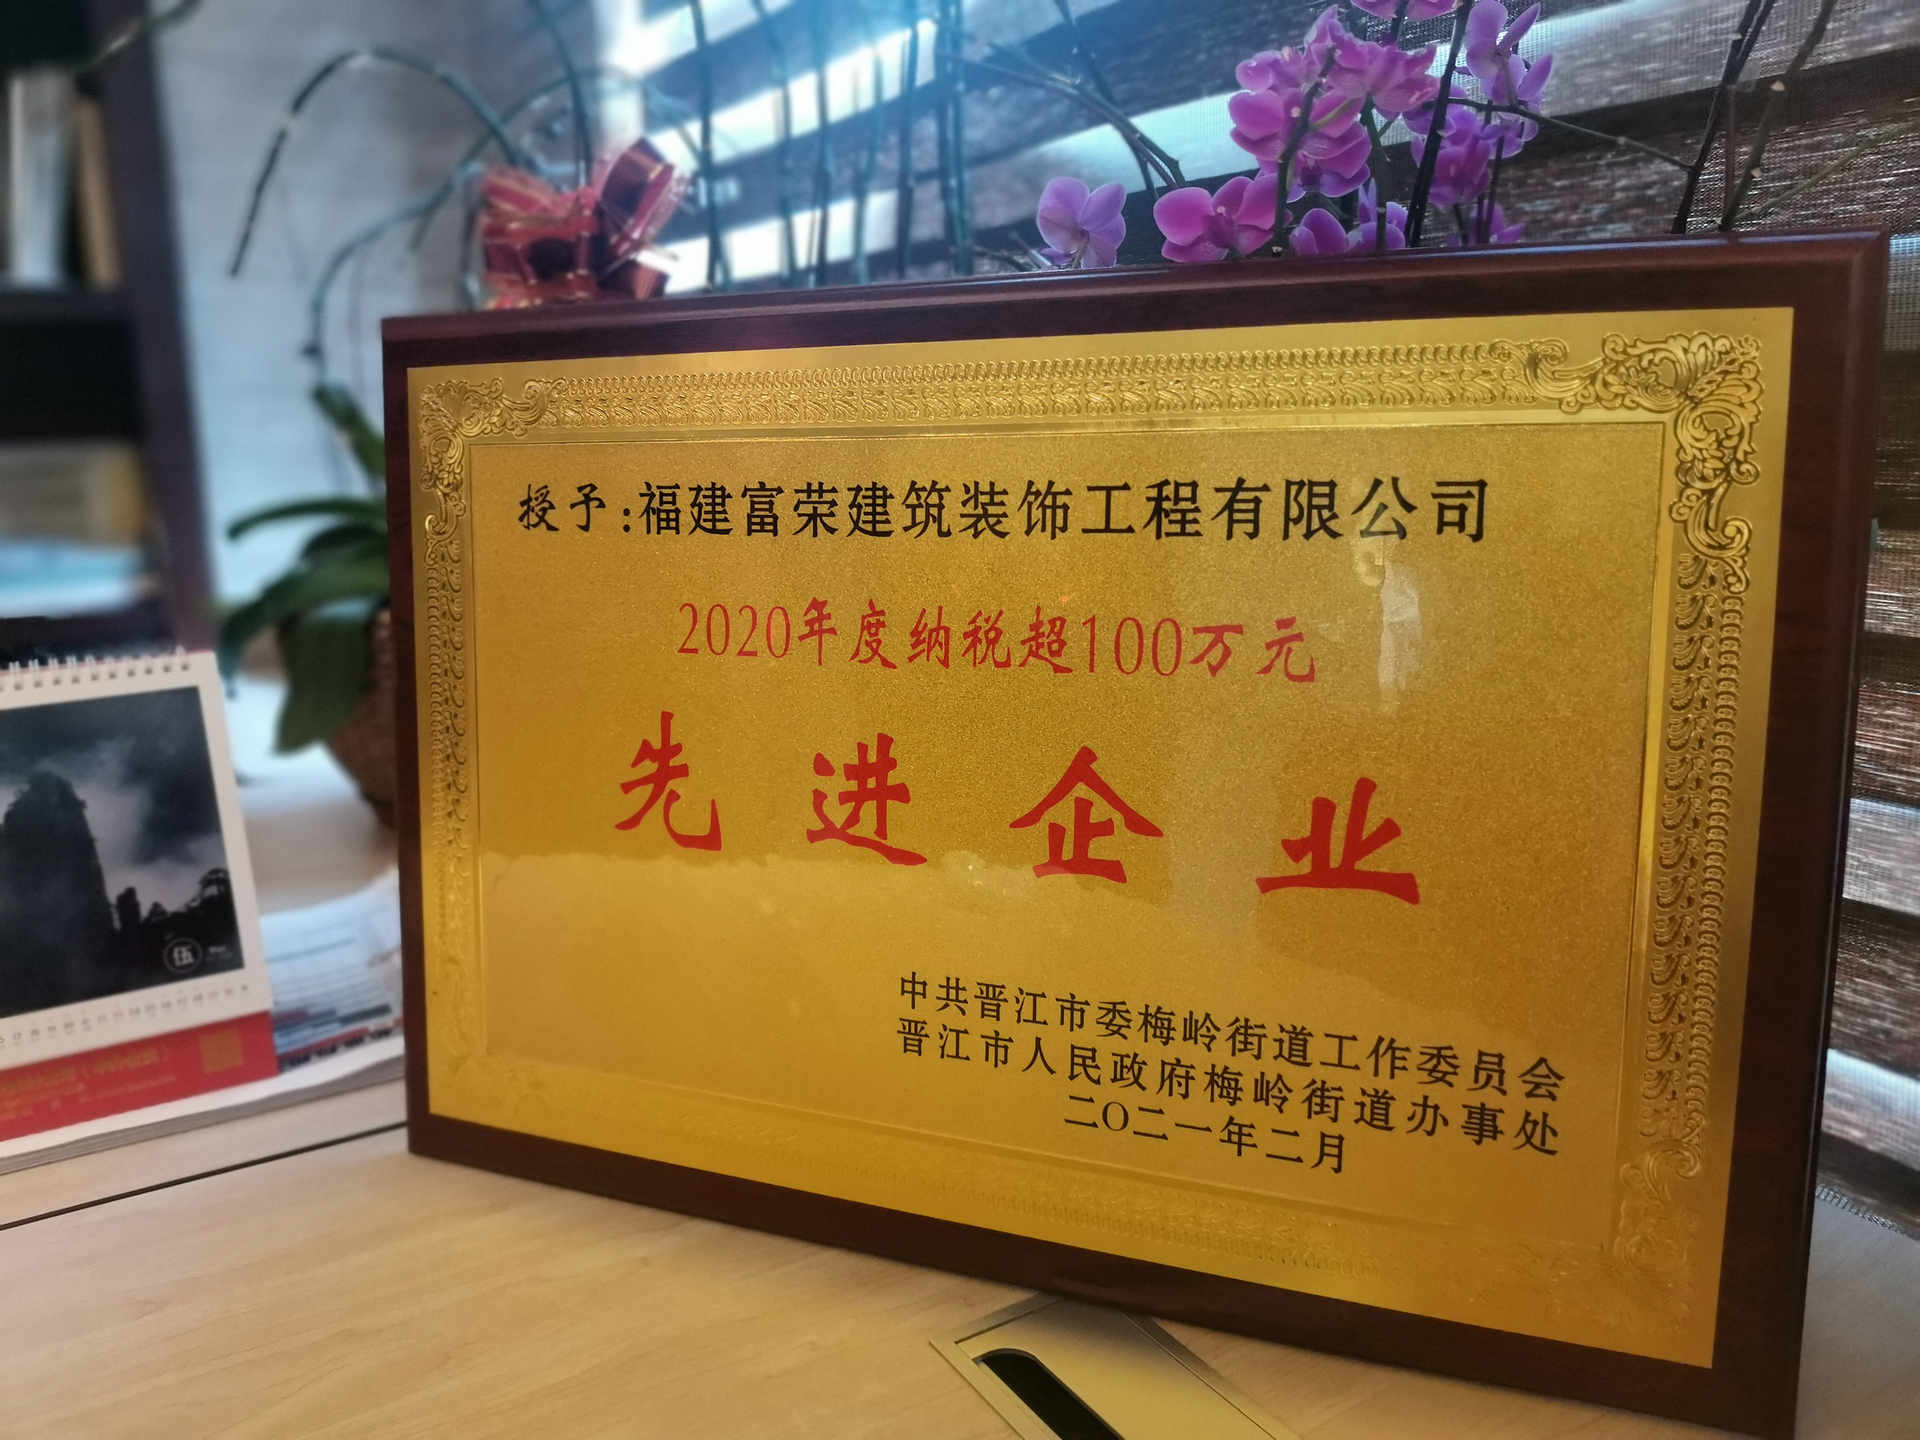 富榮裝飾榮獲晉江市2020年度“先進企業”